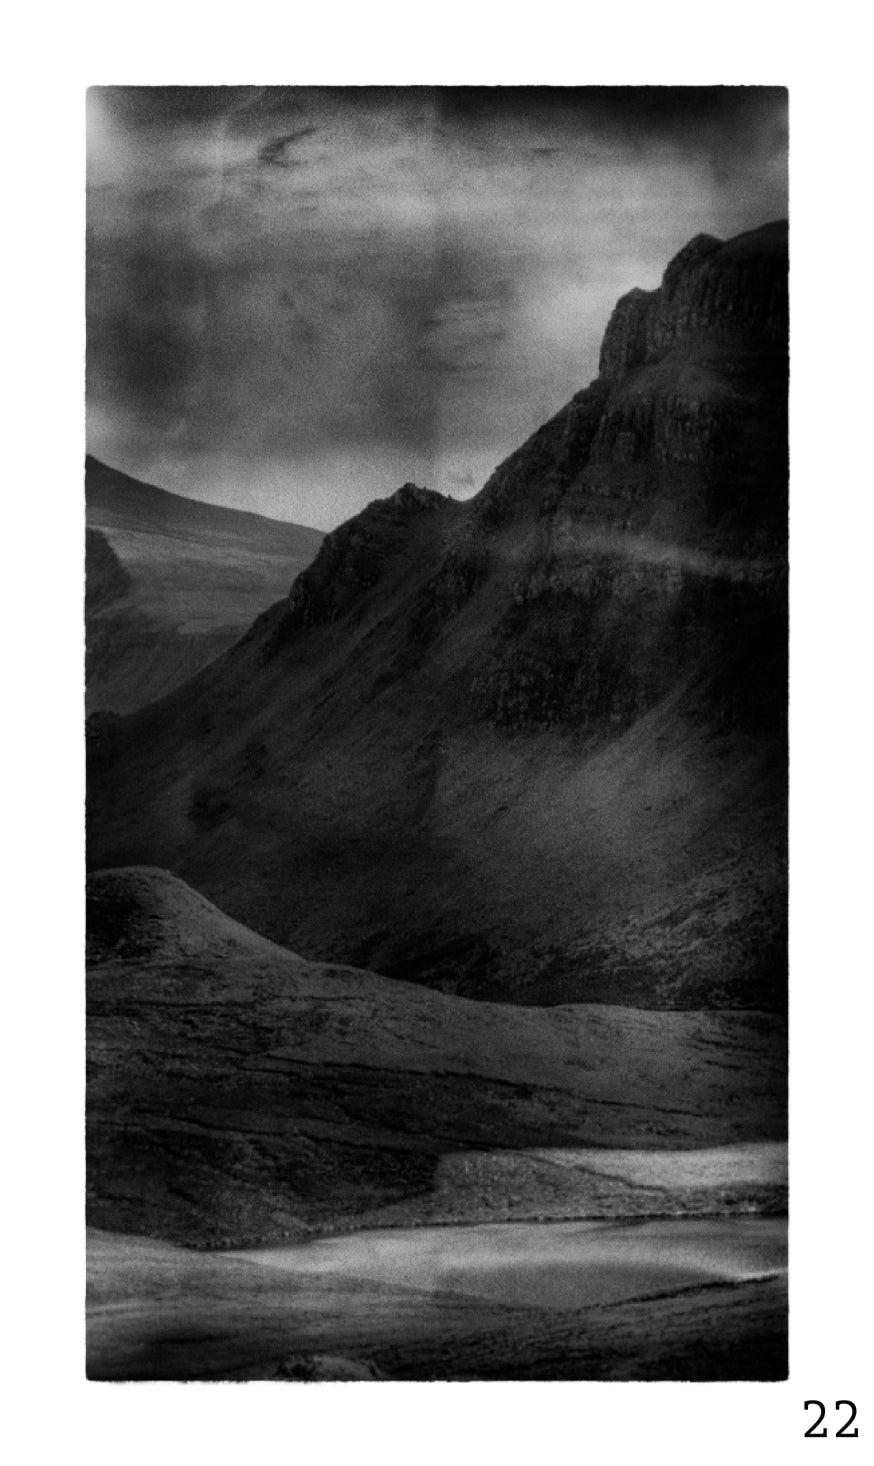 Guy Dickinson A Shadow Passes A2 print (SKYE_22) at Bard Scotland.